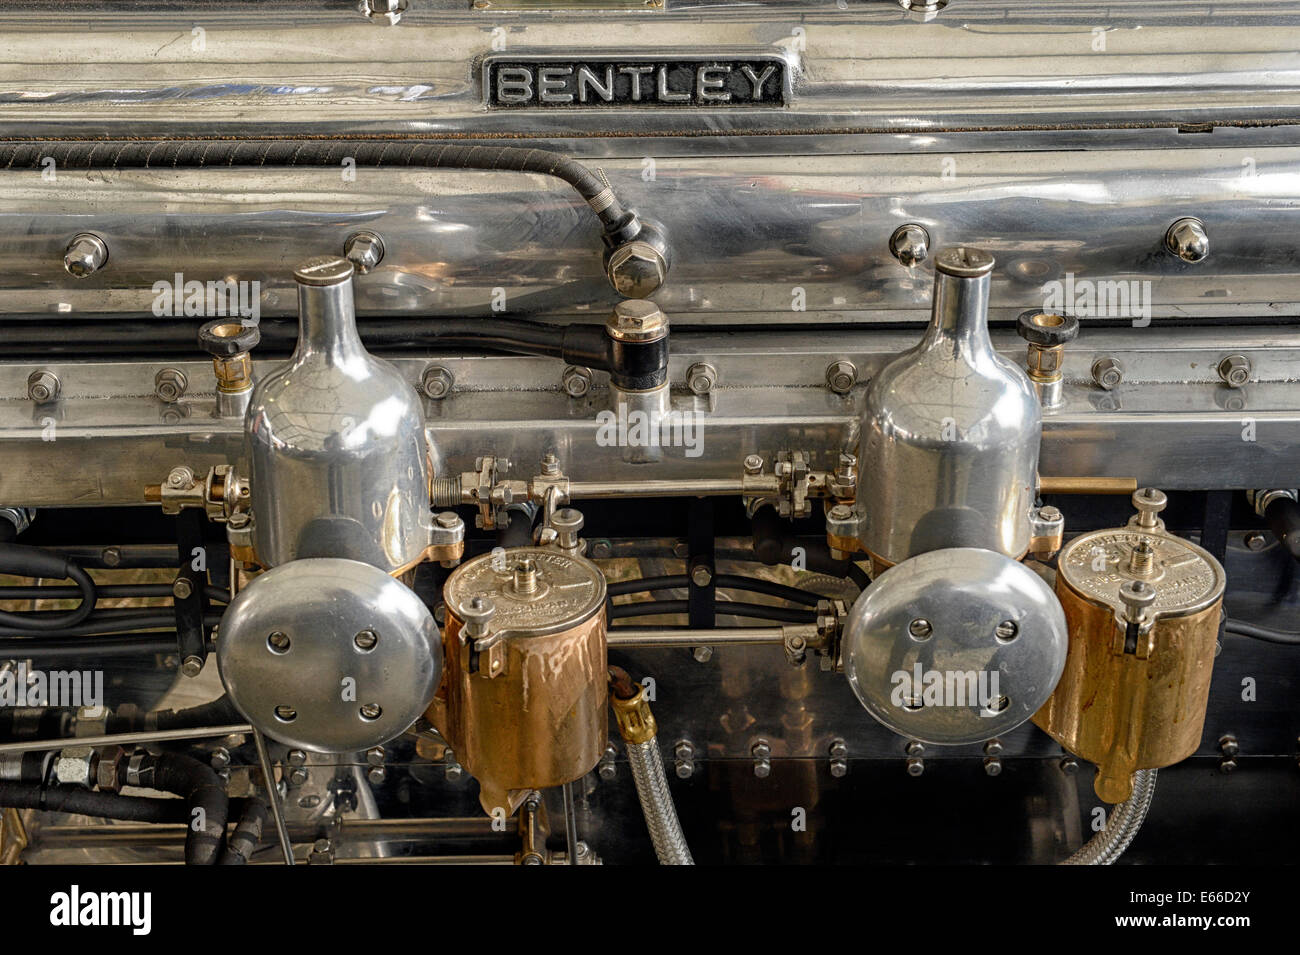 Les carburateurs et détail du moteur sur les véhicules à moteur Bentley vintage Banque D'Images